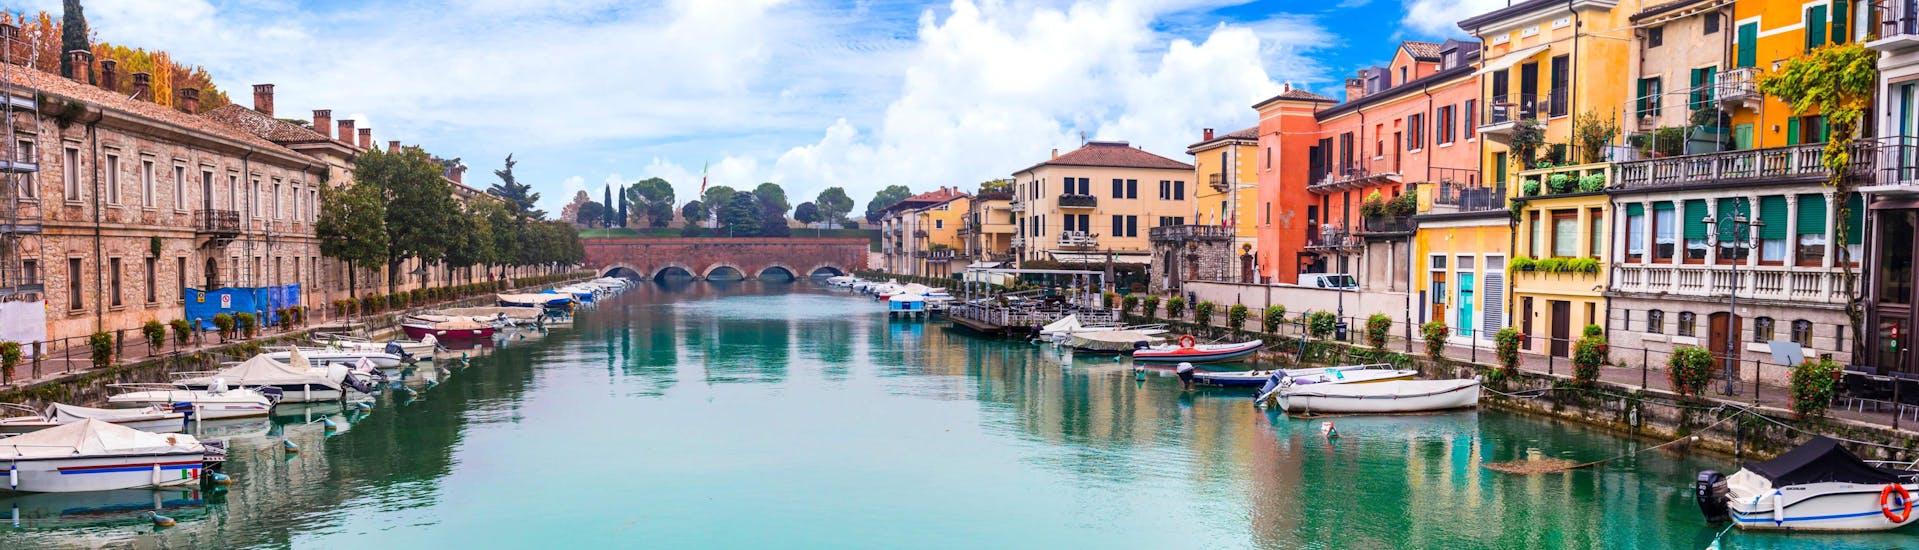 La ville de Peschiera del Garda sur le lac de Garde en Italie.